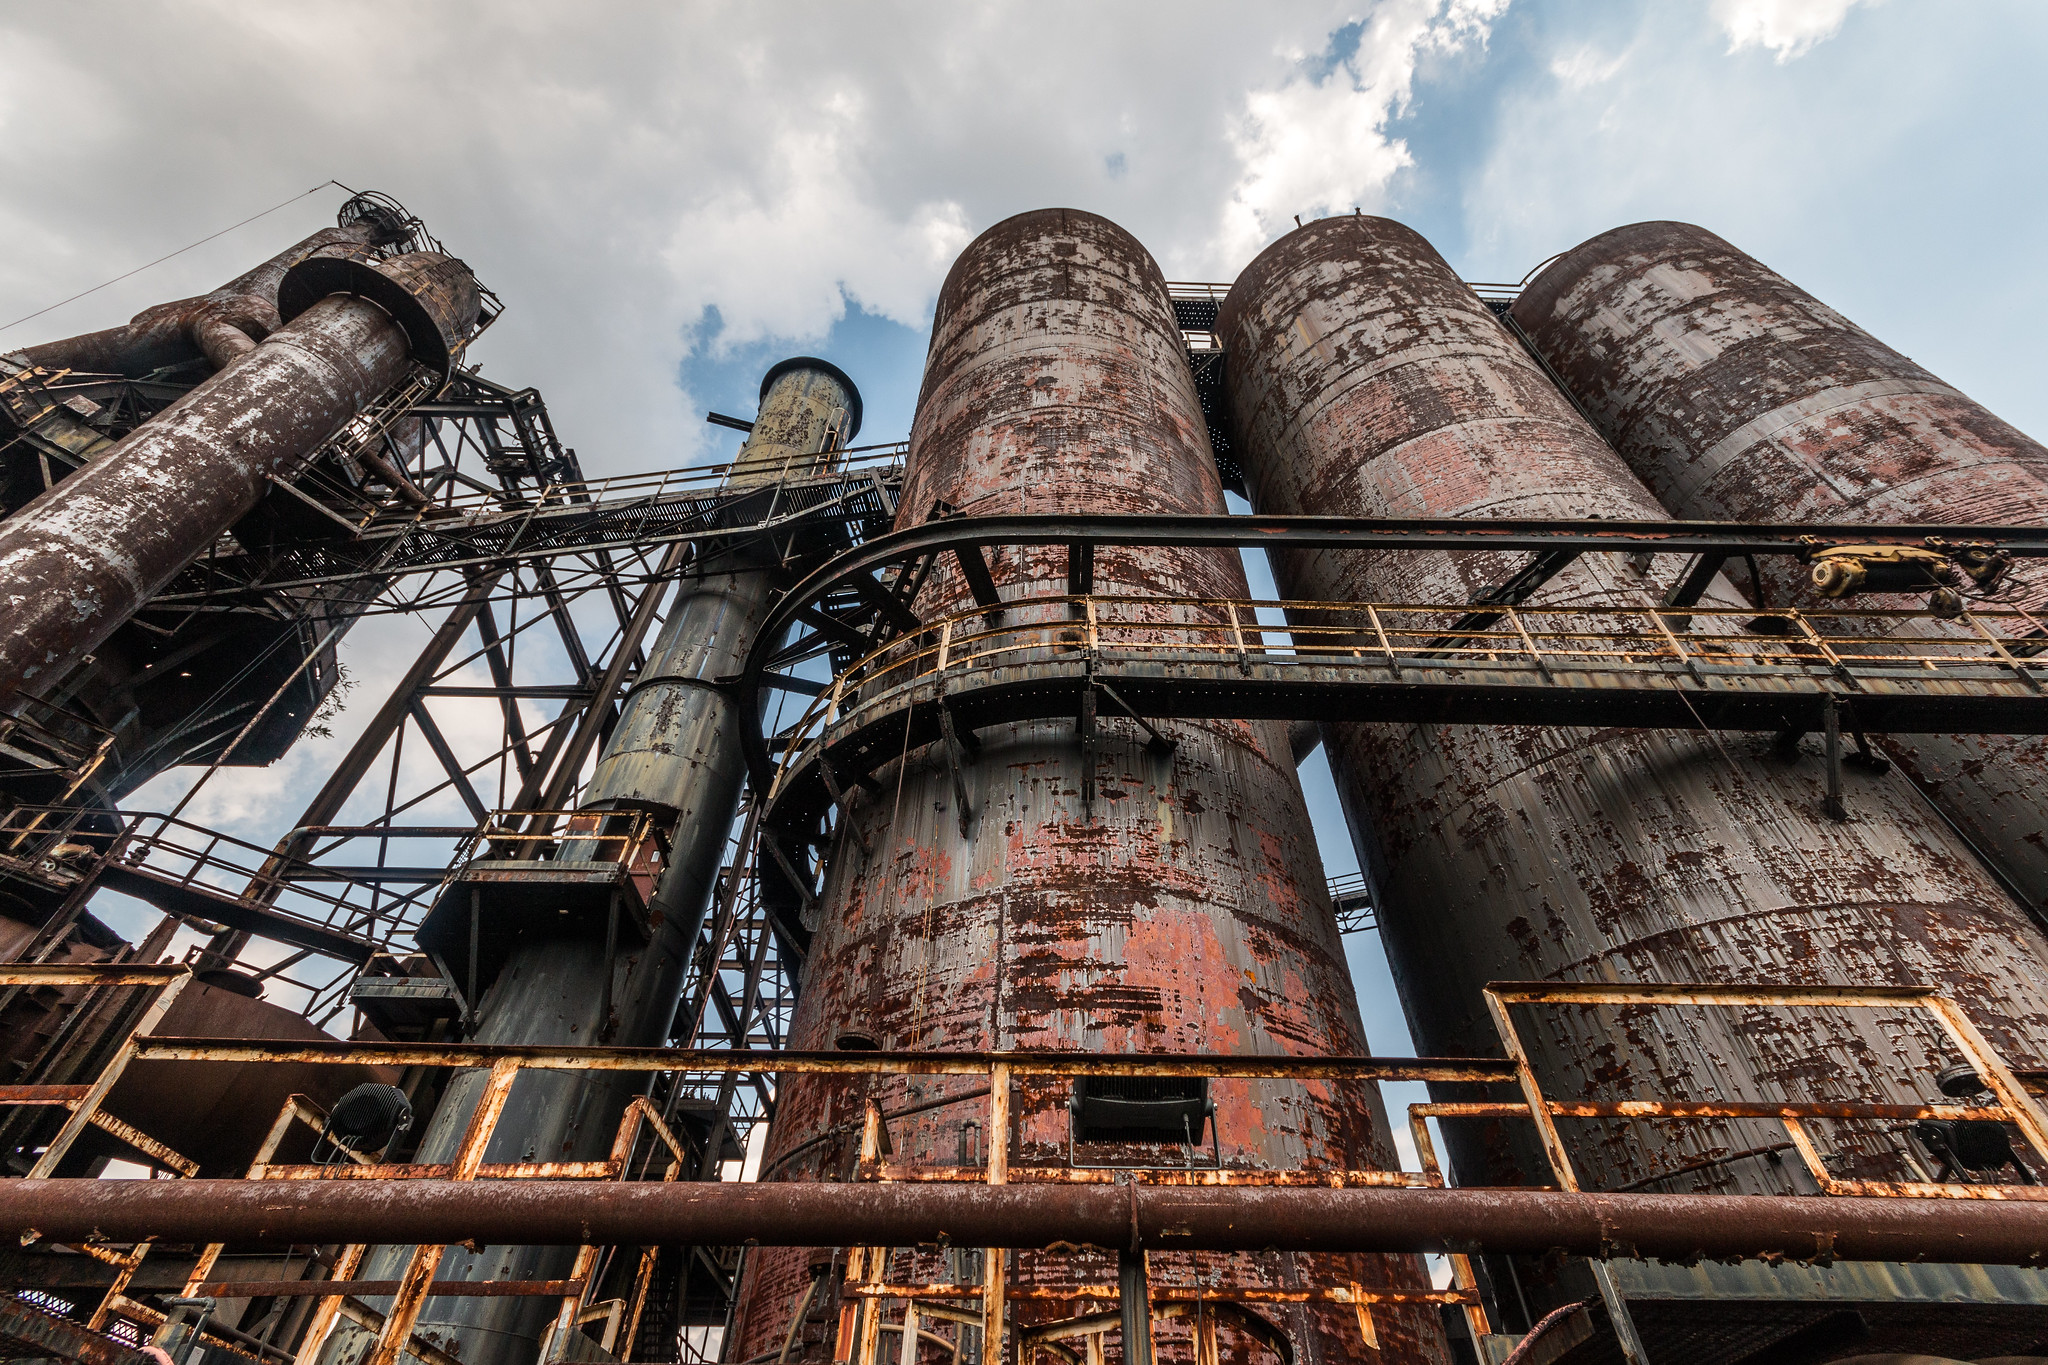 Bethlehem Steel mill in Bethlehem, Pa. Patrick Rohe/Flickr.